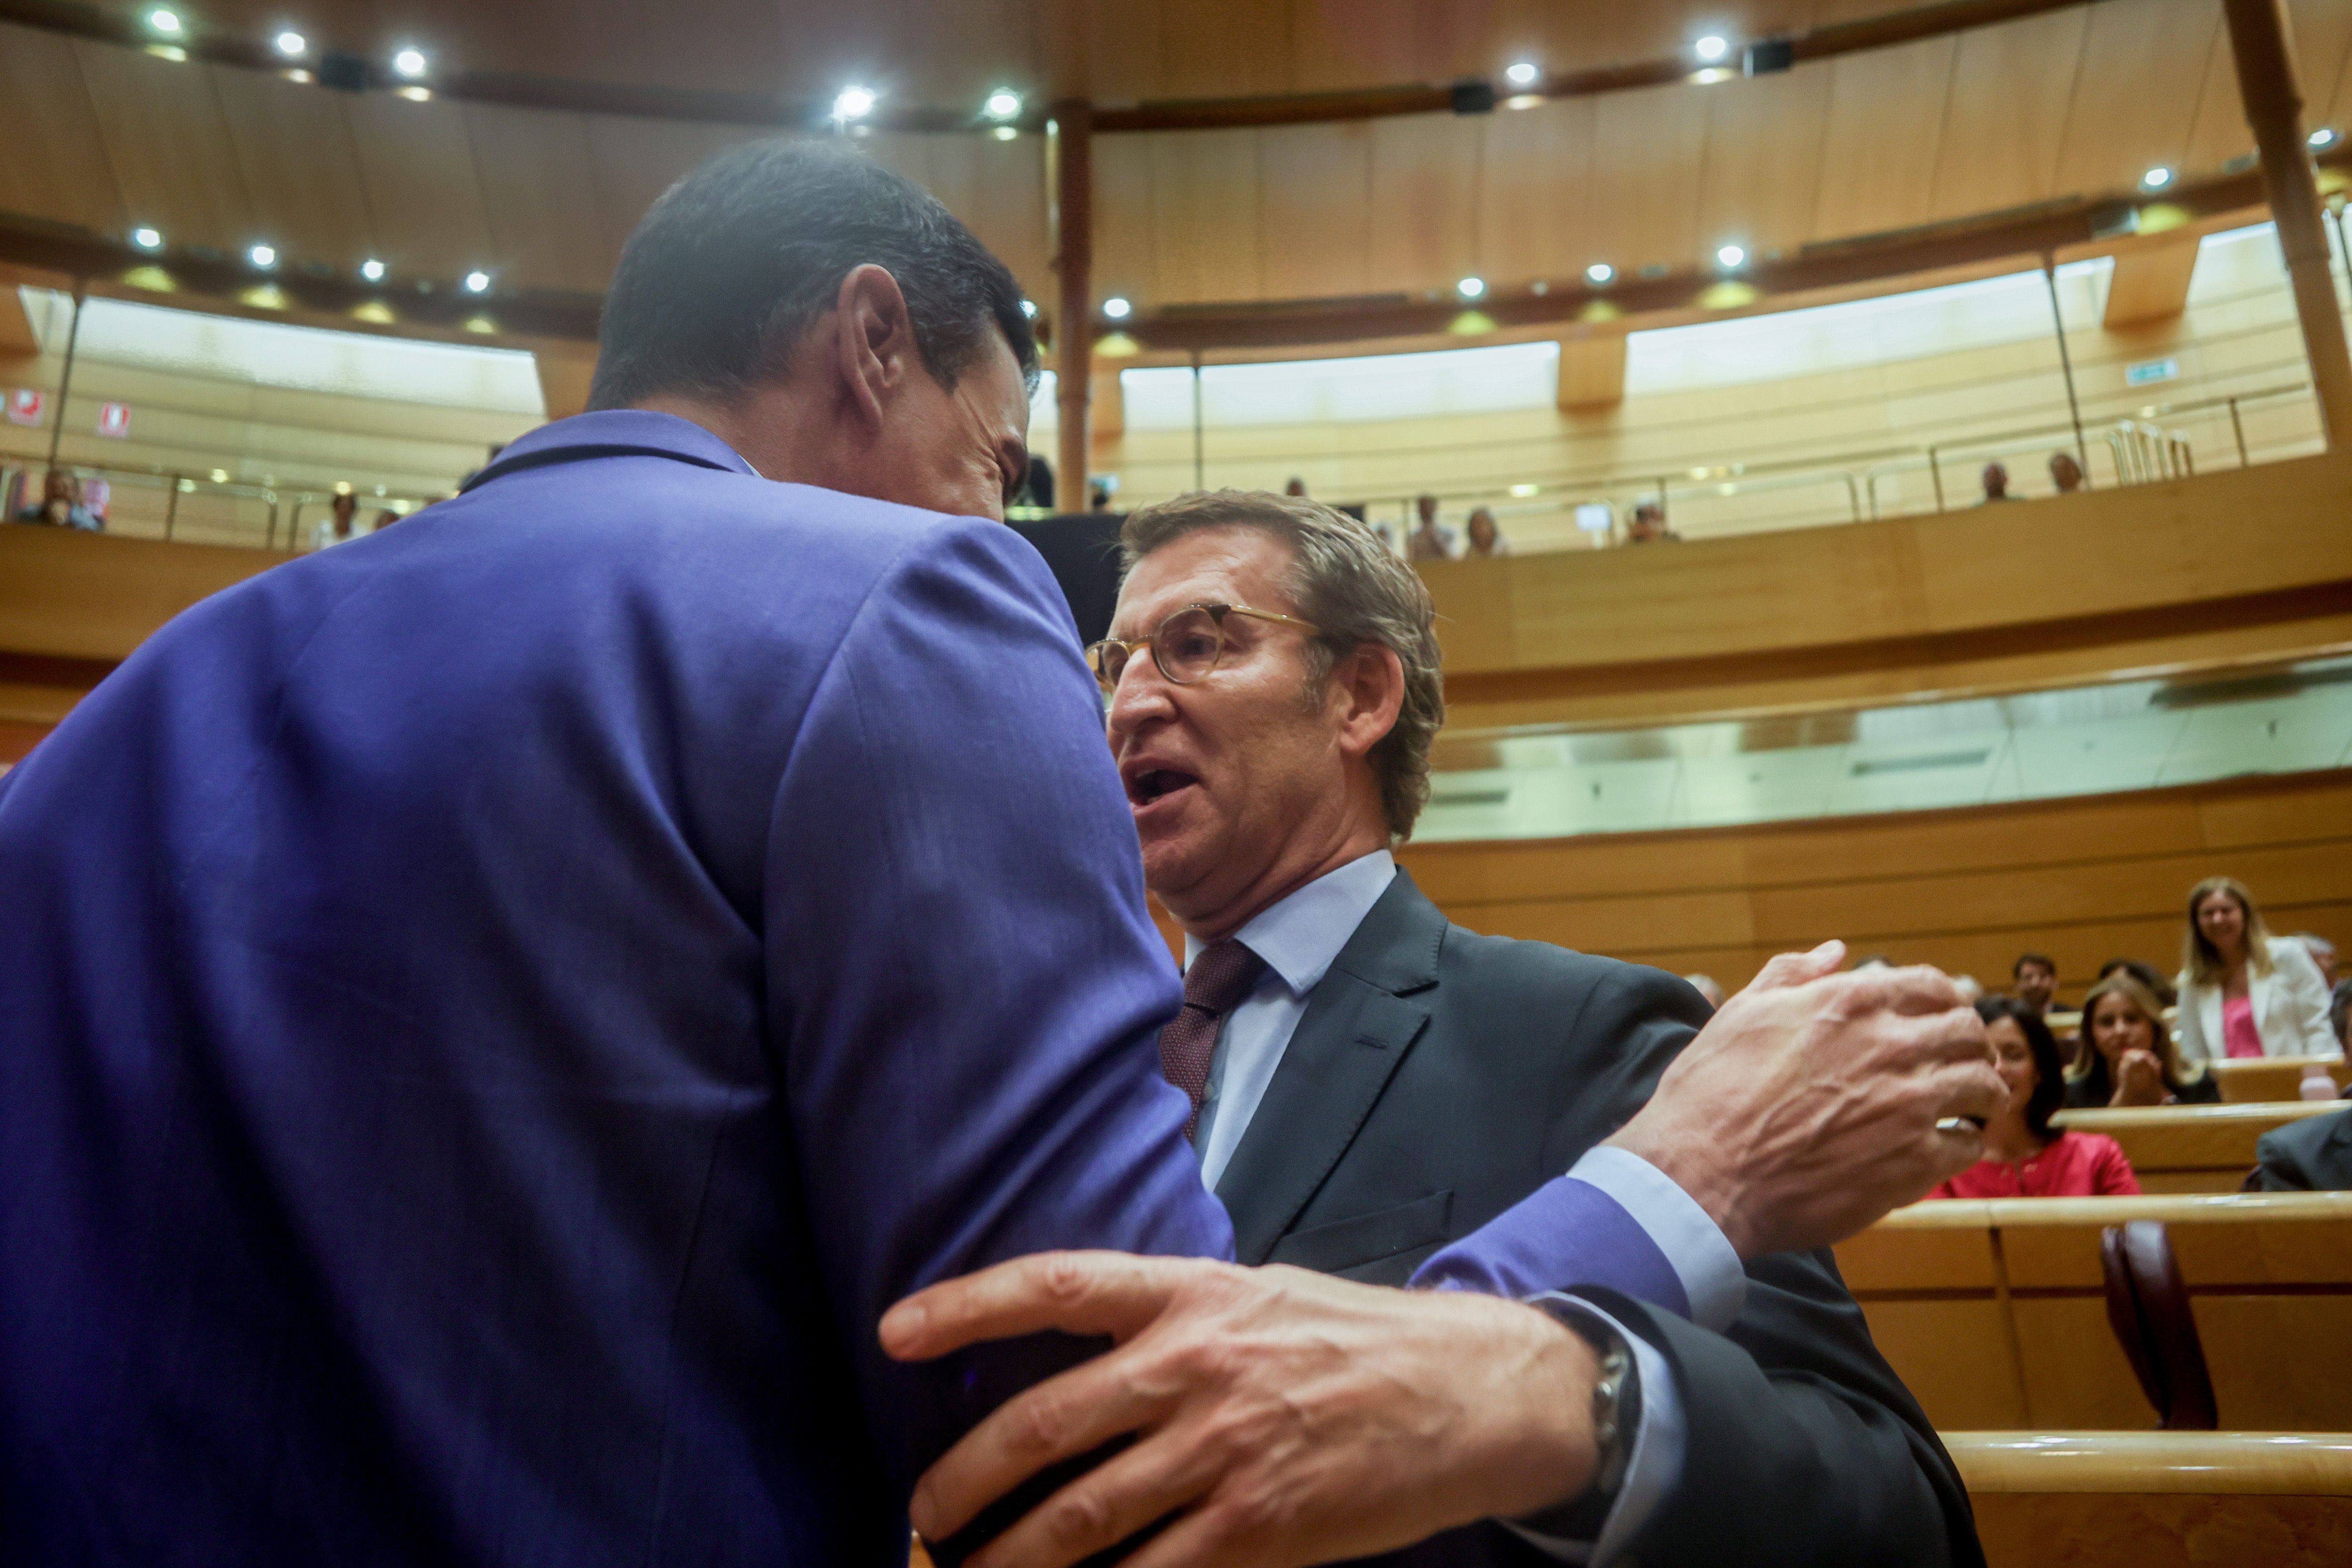 Sánchez y Feijóo, cara a cara: el debate más esperado tiene lugar en Senado